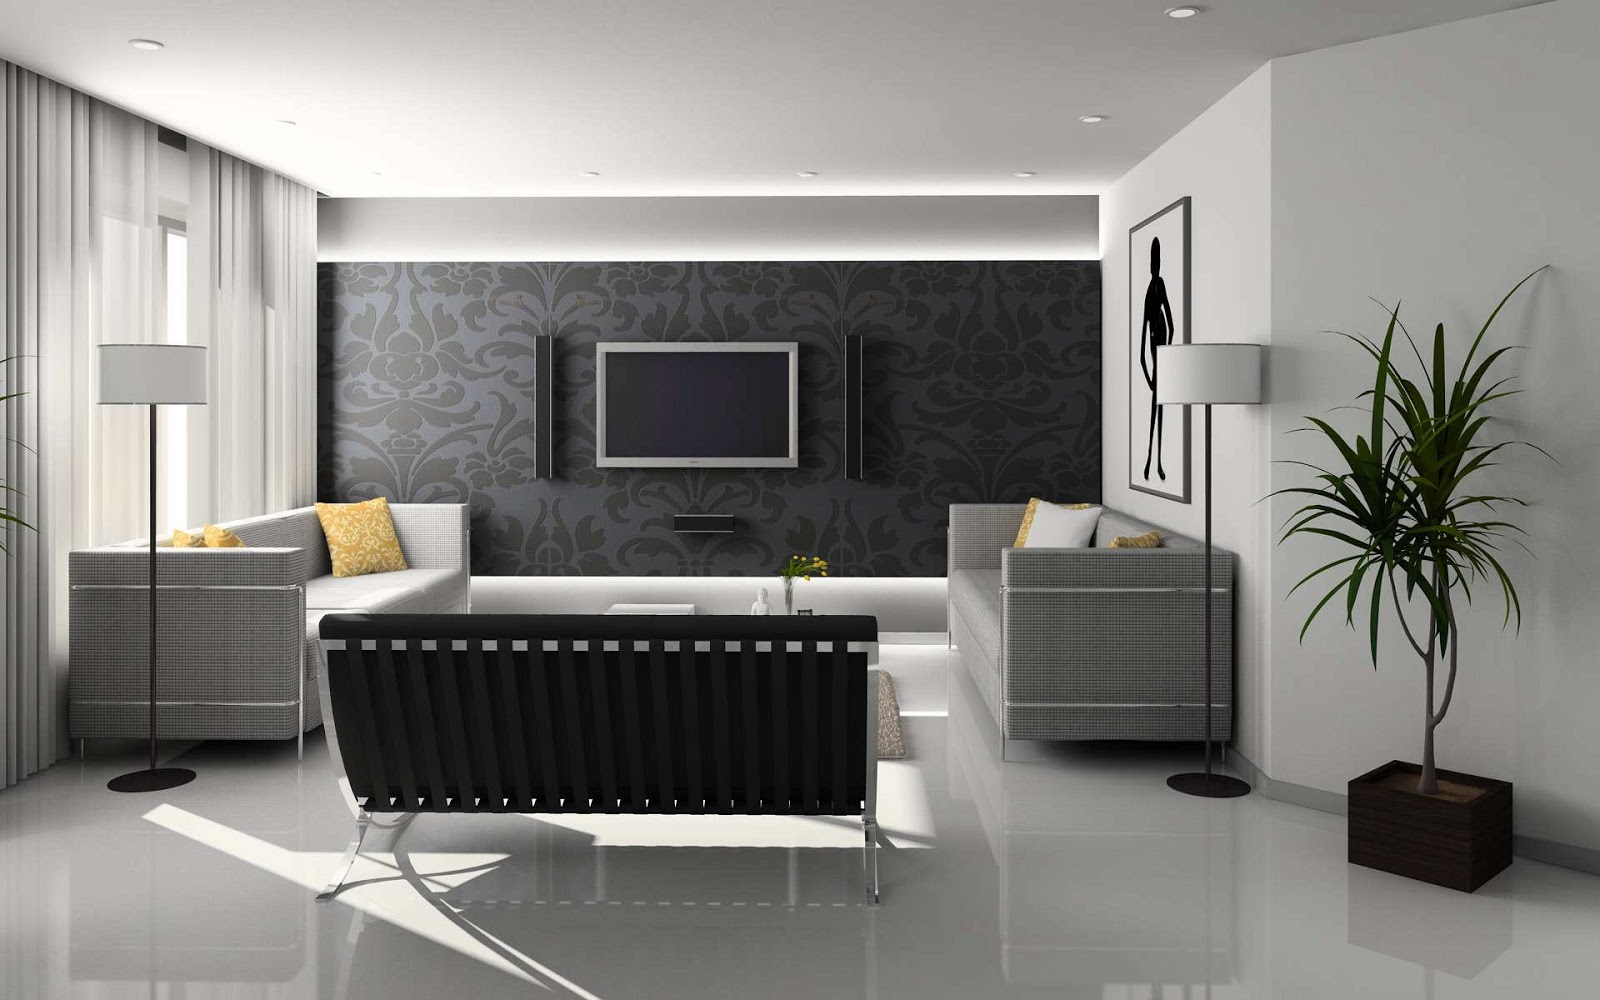 Cozy New Home Interior Design Ideas new home interior design ideas